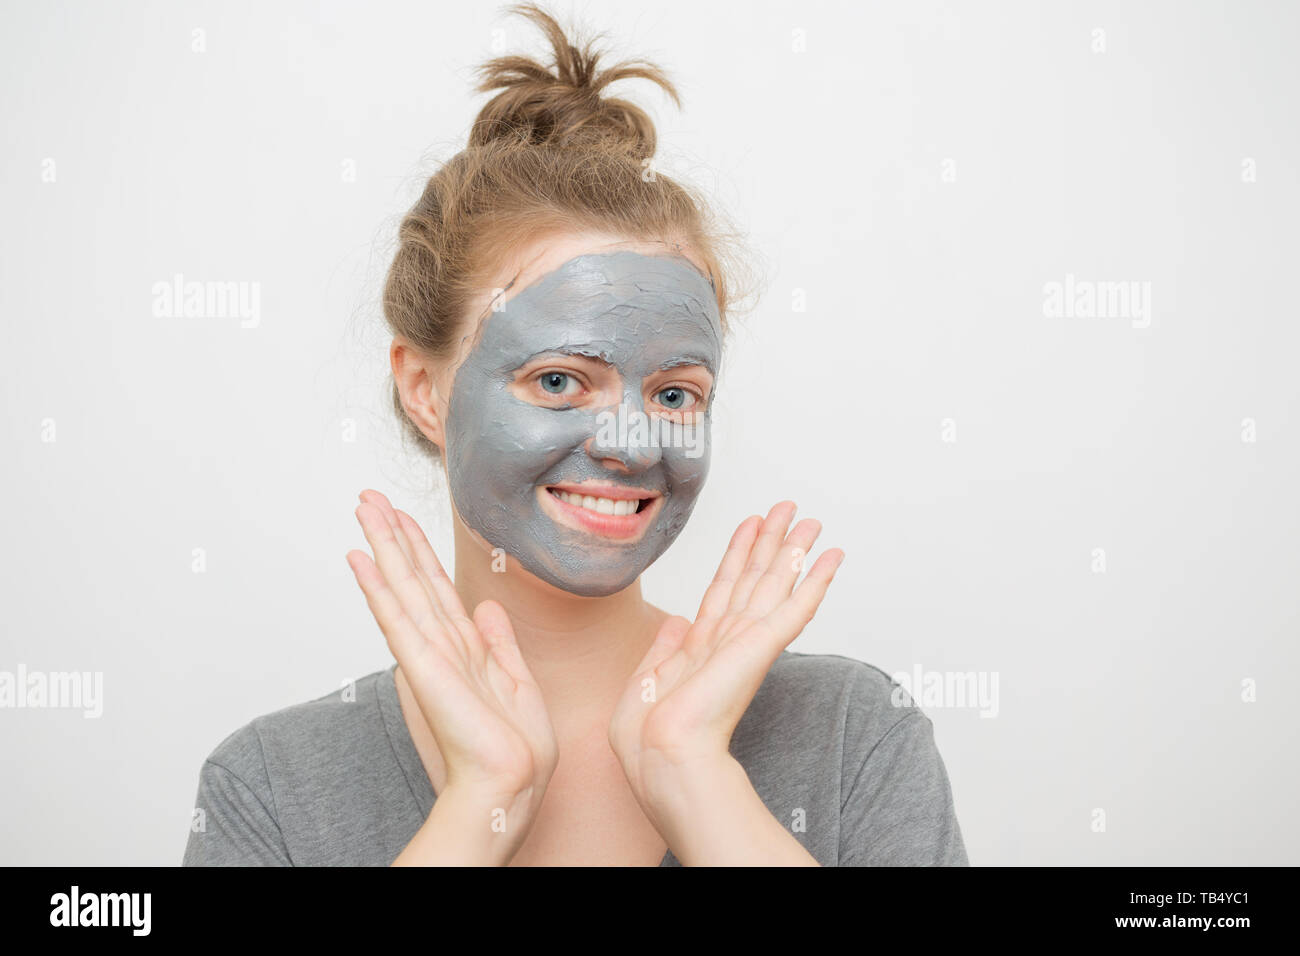 Junge kaukasier Frau mit schwarzen oder grauen Gesichtsbehandlung Clay Mask auf ihrem Gesicht, ein Lächeln auf den Lippen Stockfoto